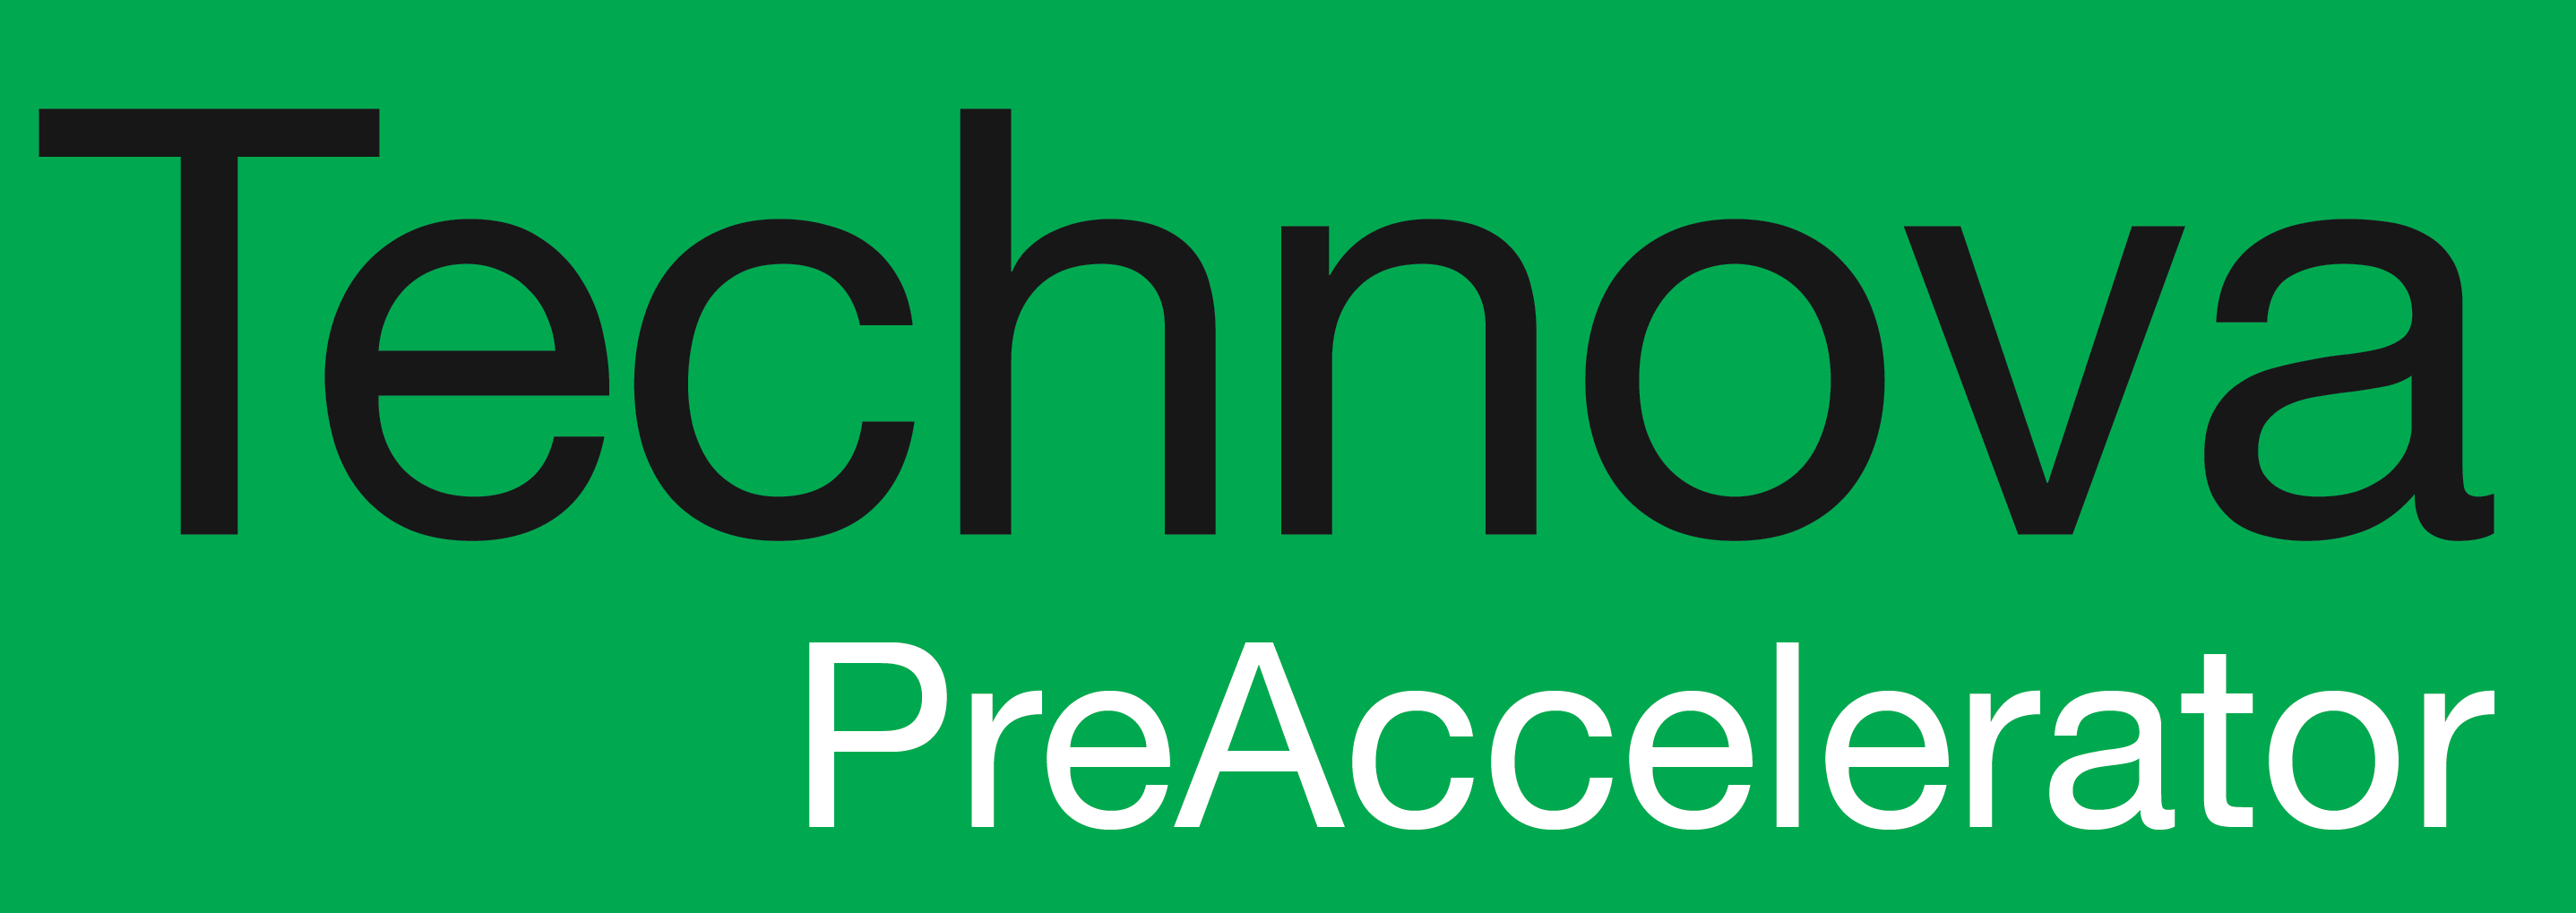 Logo_Preaccelerator_Green